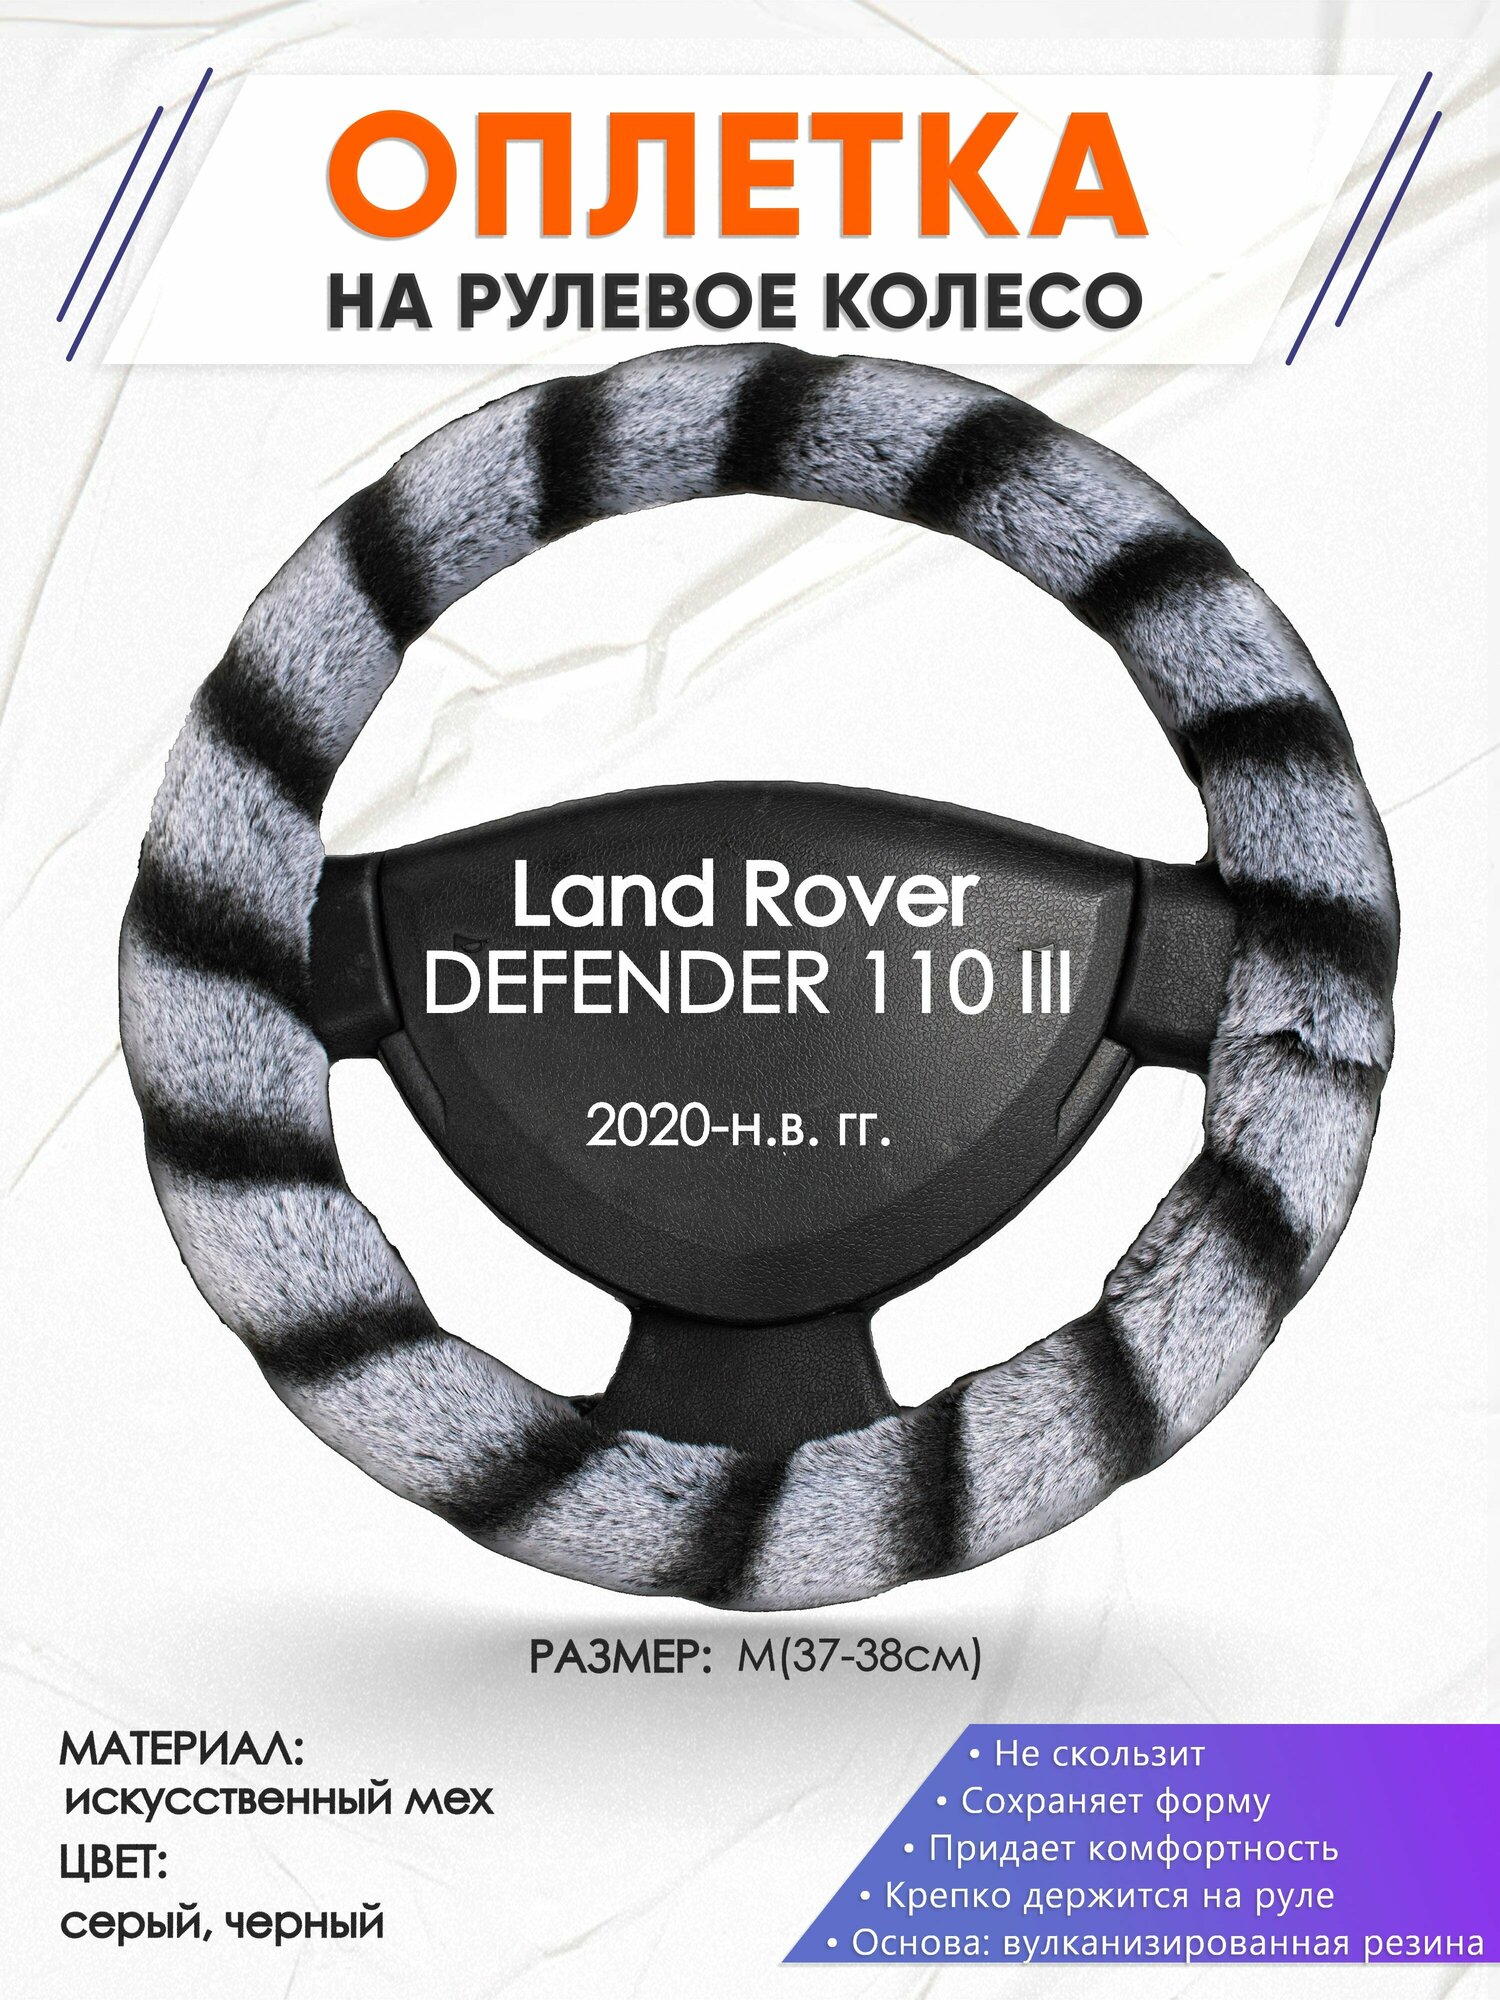 Оплетка наруль для Land Rover DEFENDER 110 3(Ленд Ровер Дефендер 110) 2020-н. в. годов выпуска, размер M(37-38см), Искусственный мех 41